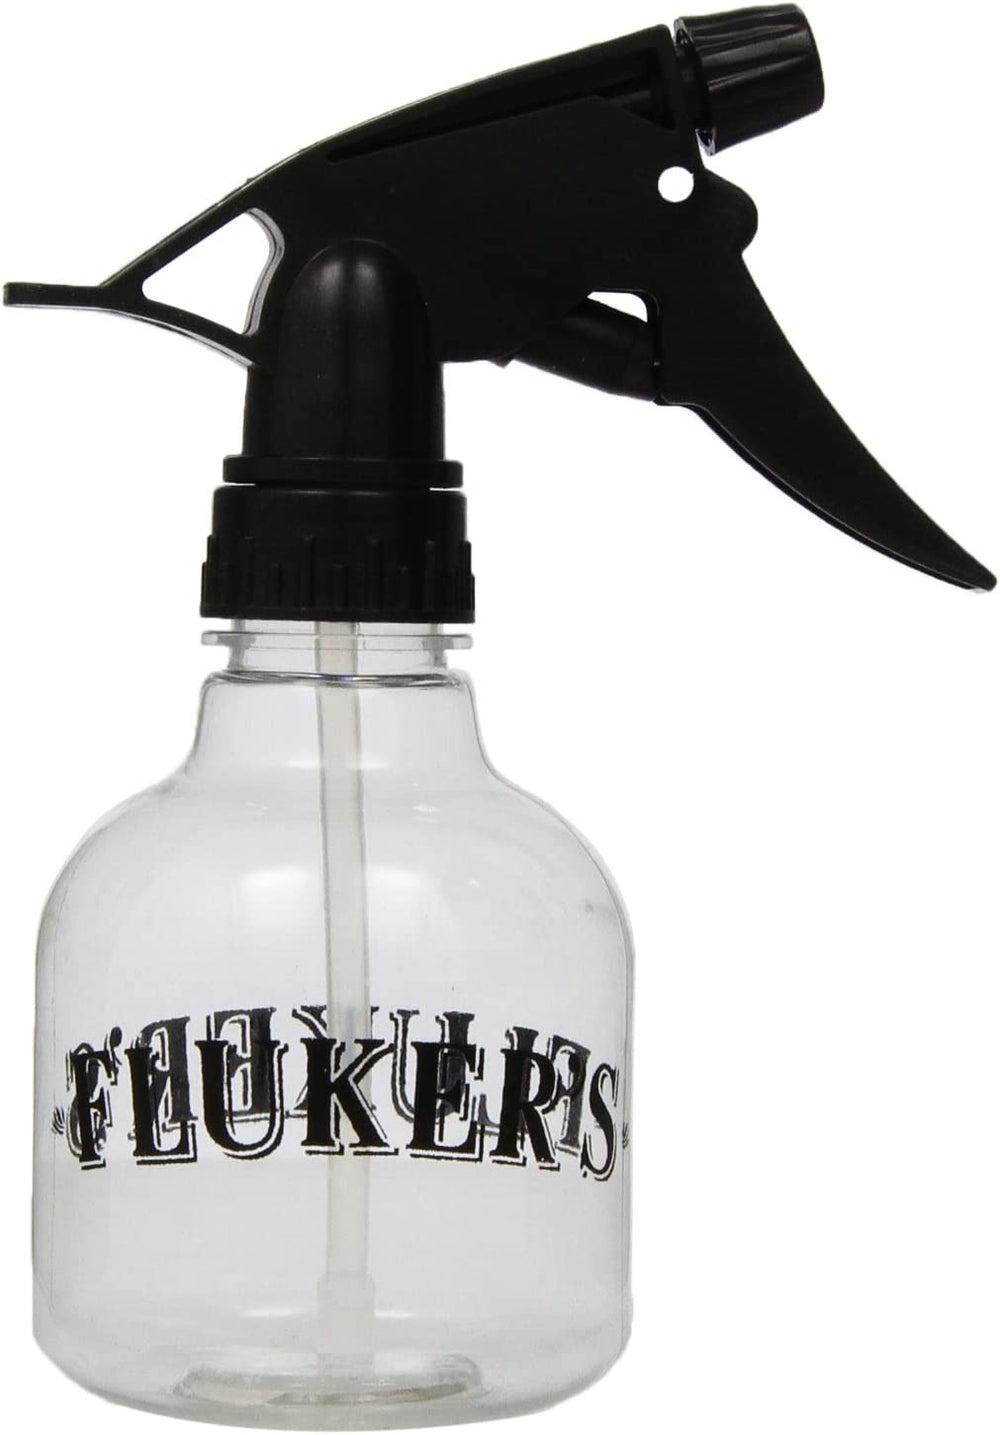 Fluker's Repta Sprayer